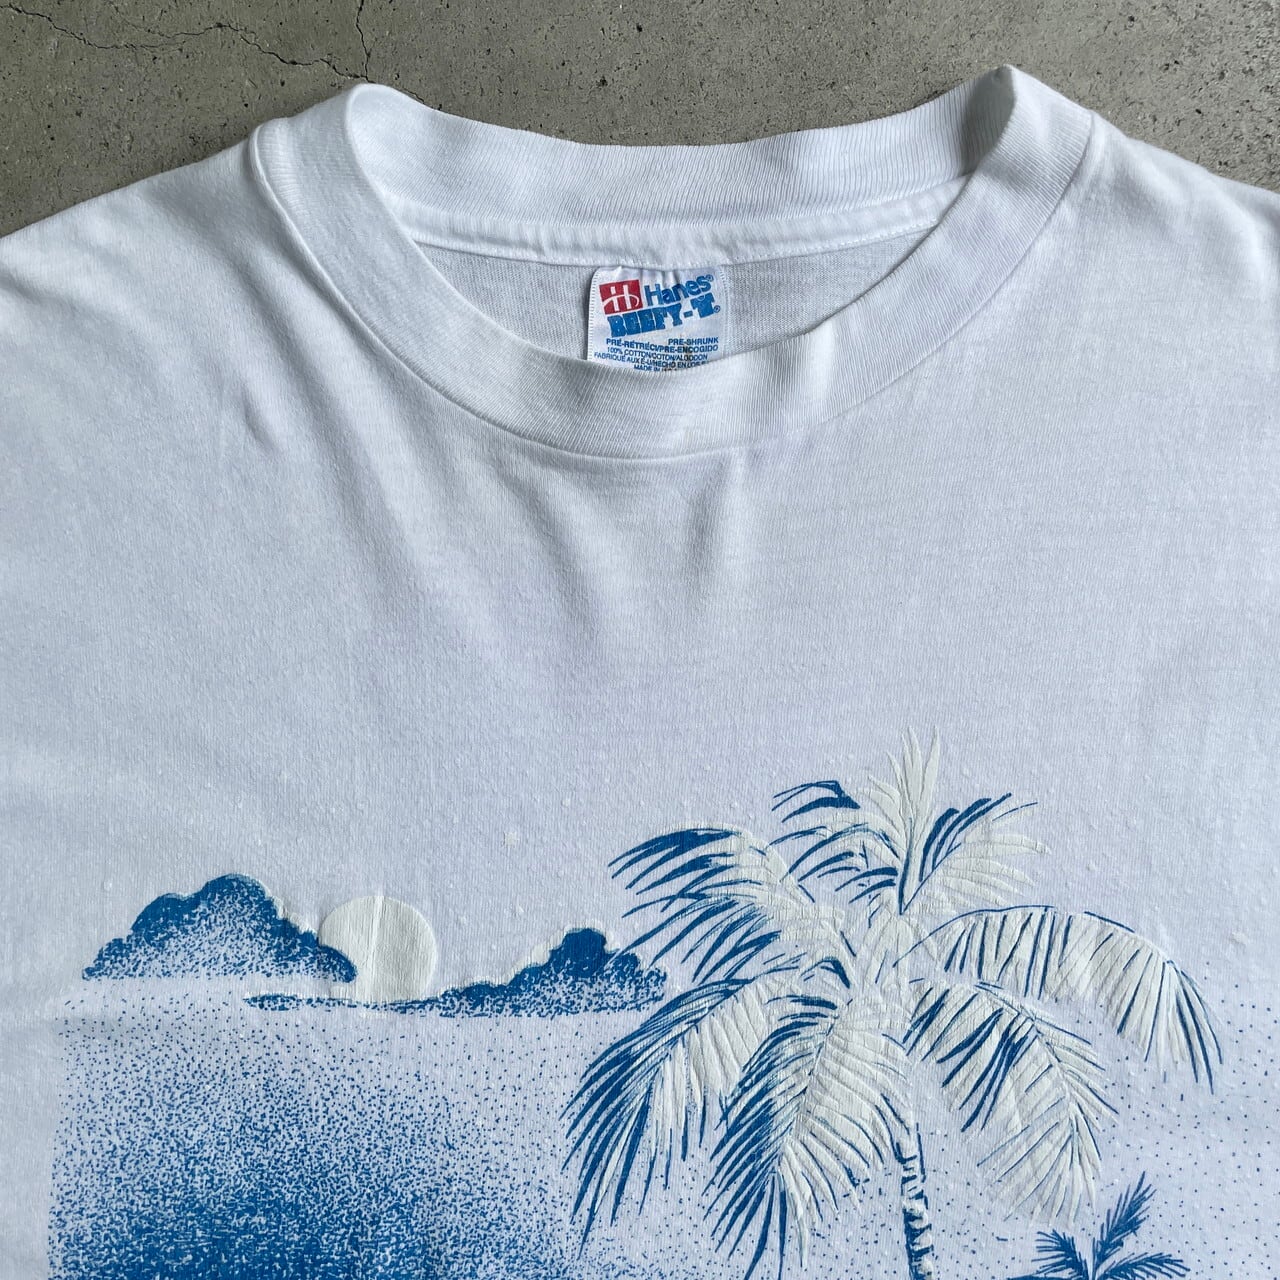 激レア 90s USA製 ビンテージ ハワイ火山 Hawaii Tシャツ XL